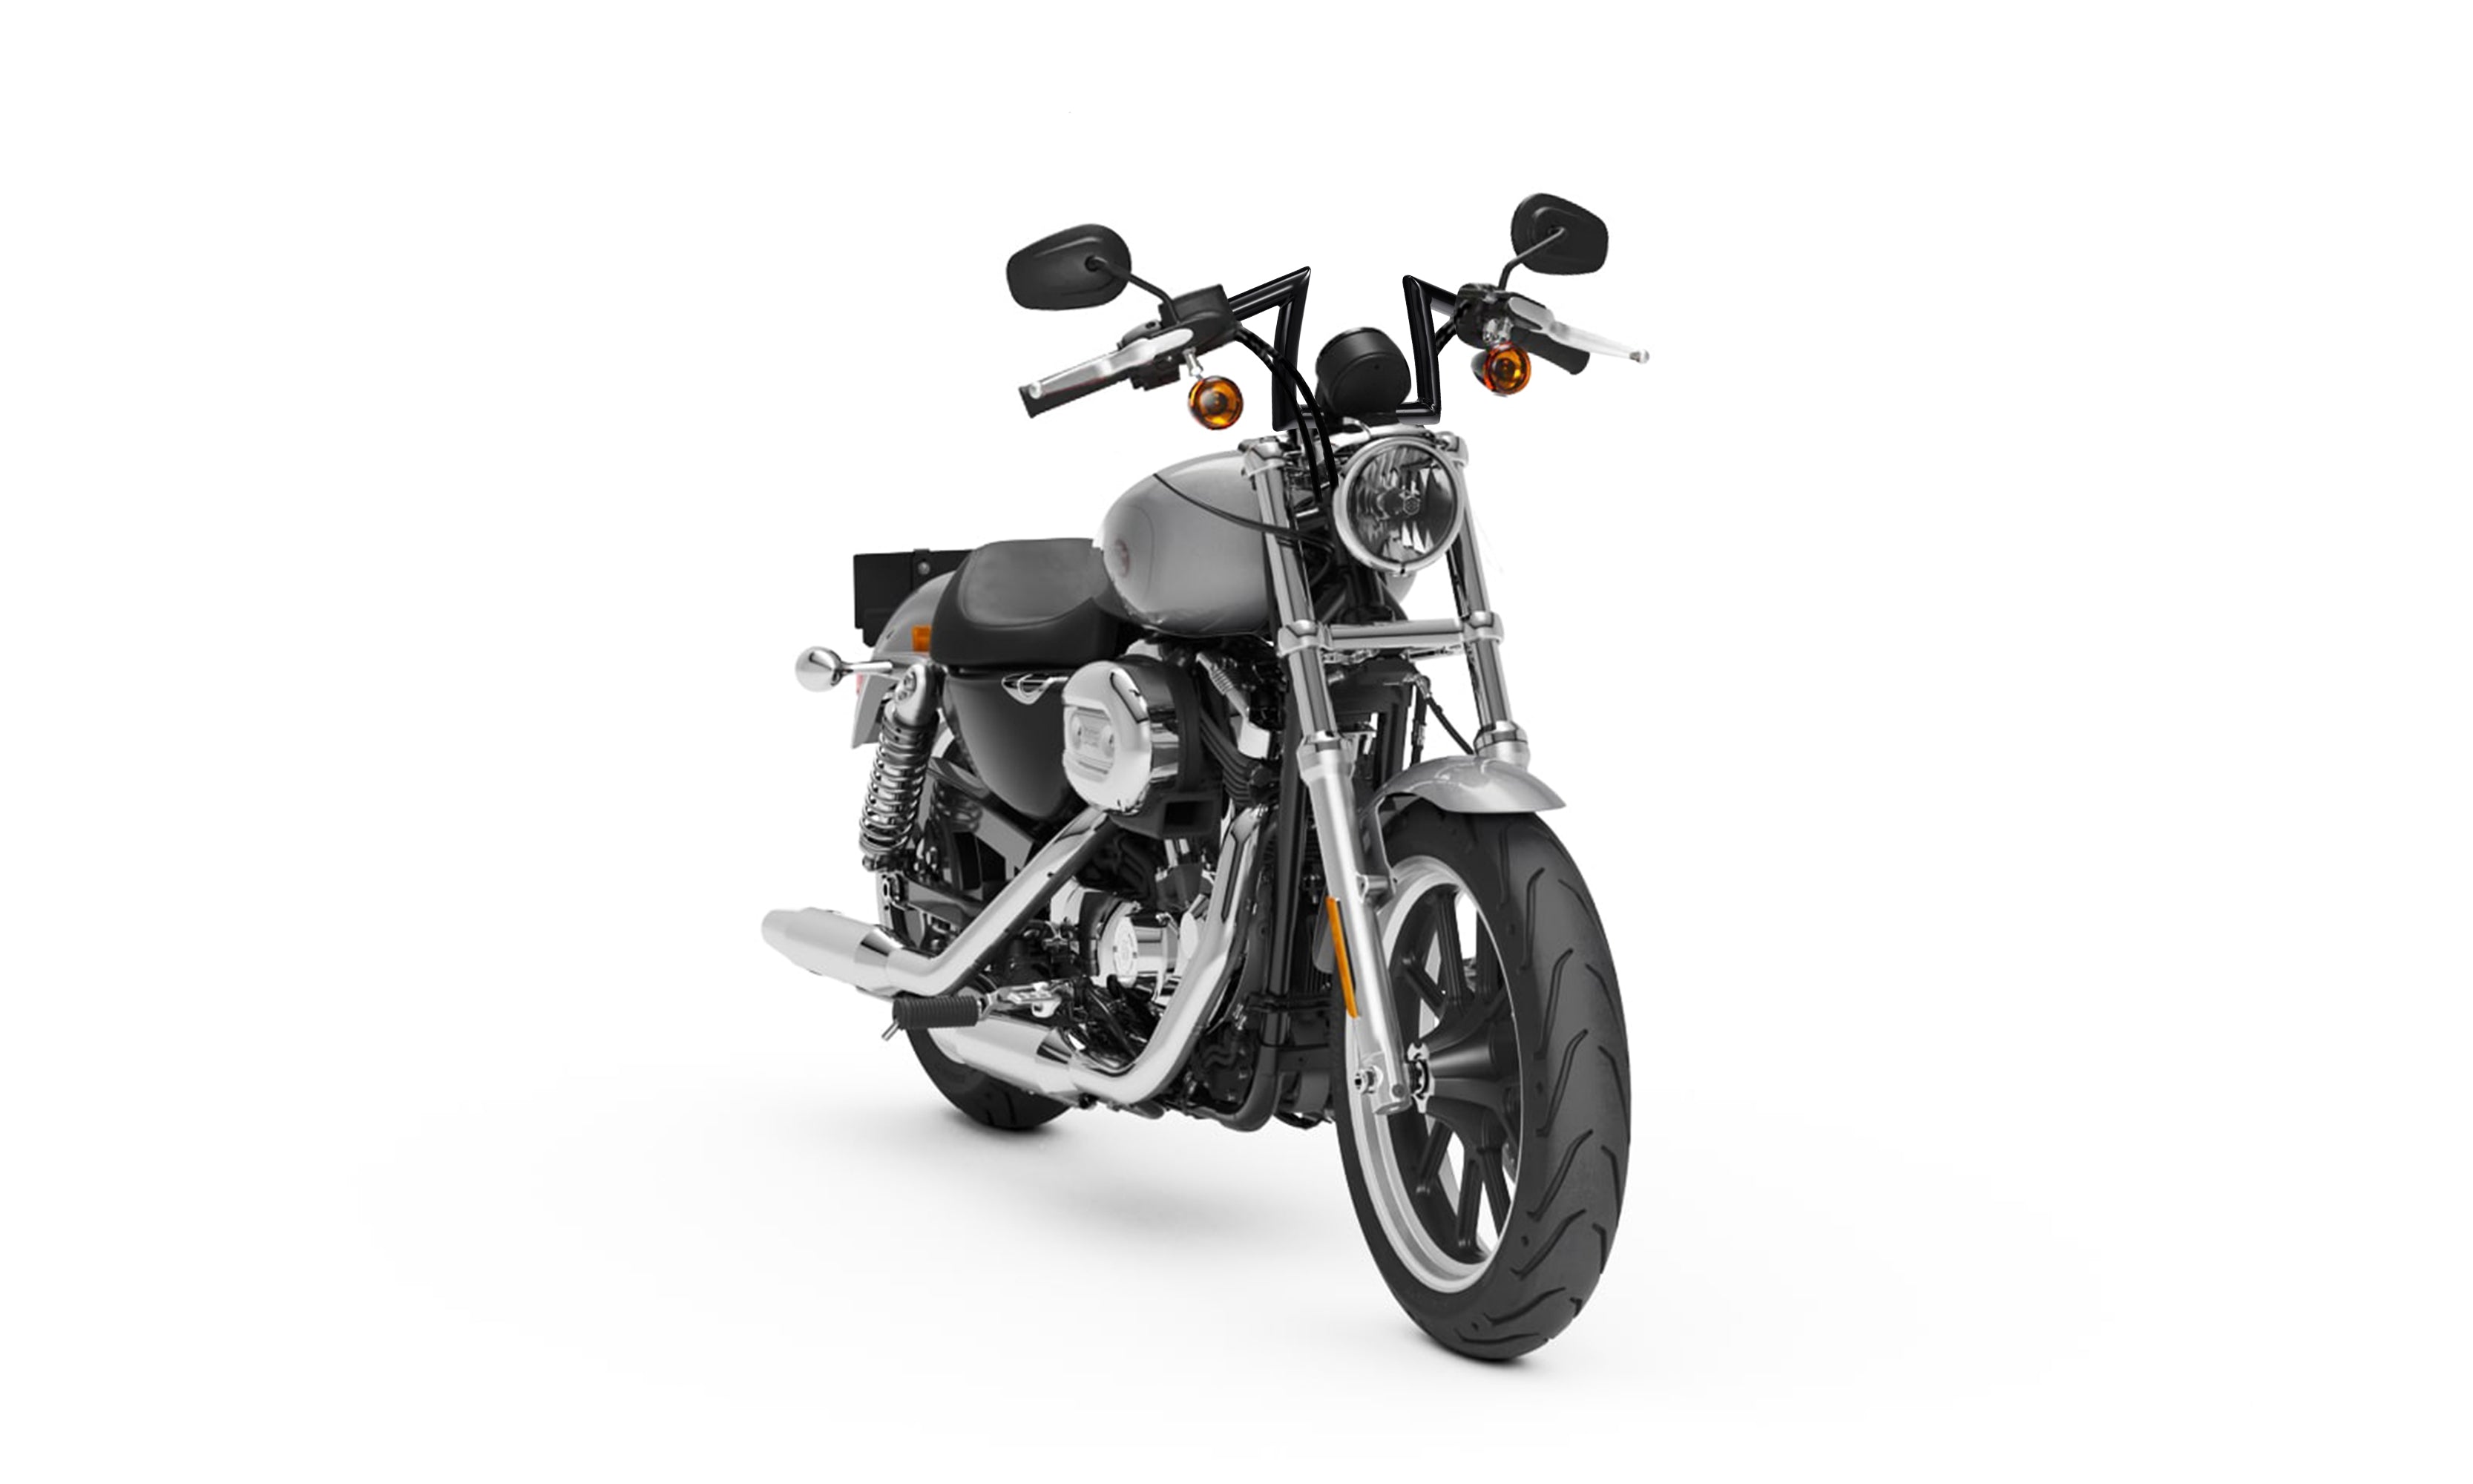 Viking Iron Born Z Handlebar For Harley Sportster Superlow Gloss Black Bag on Bike View @expand